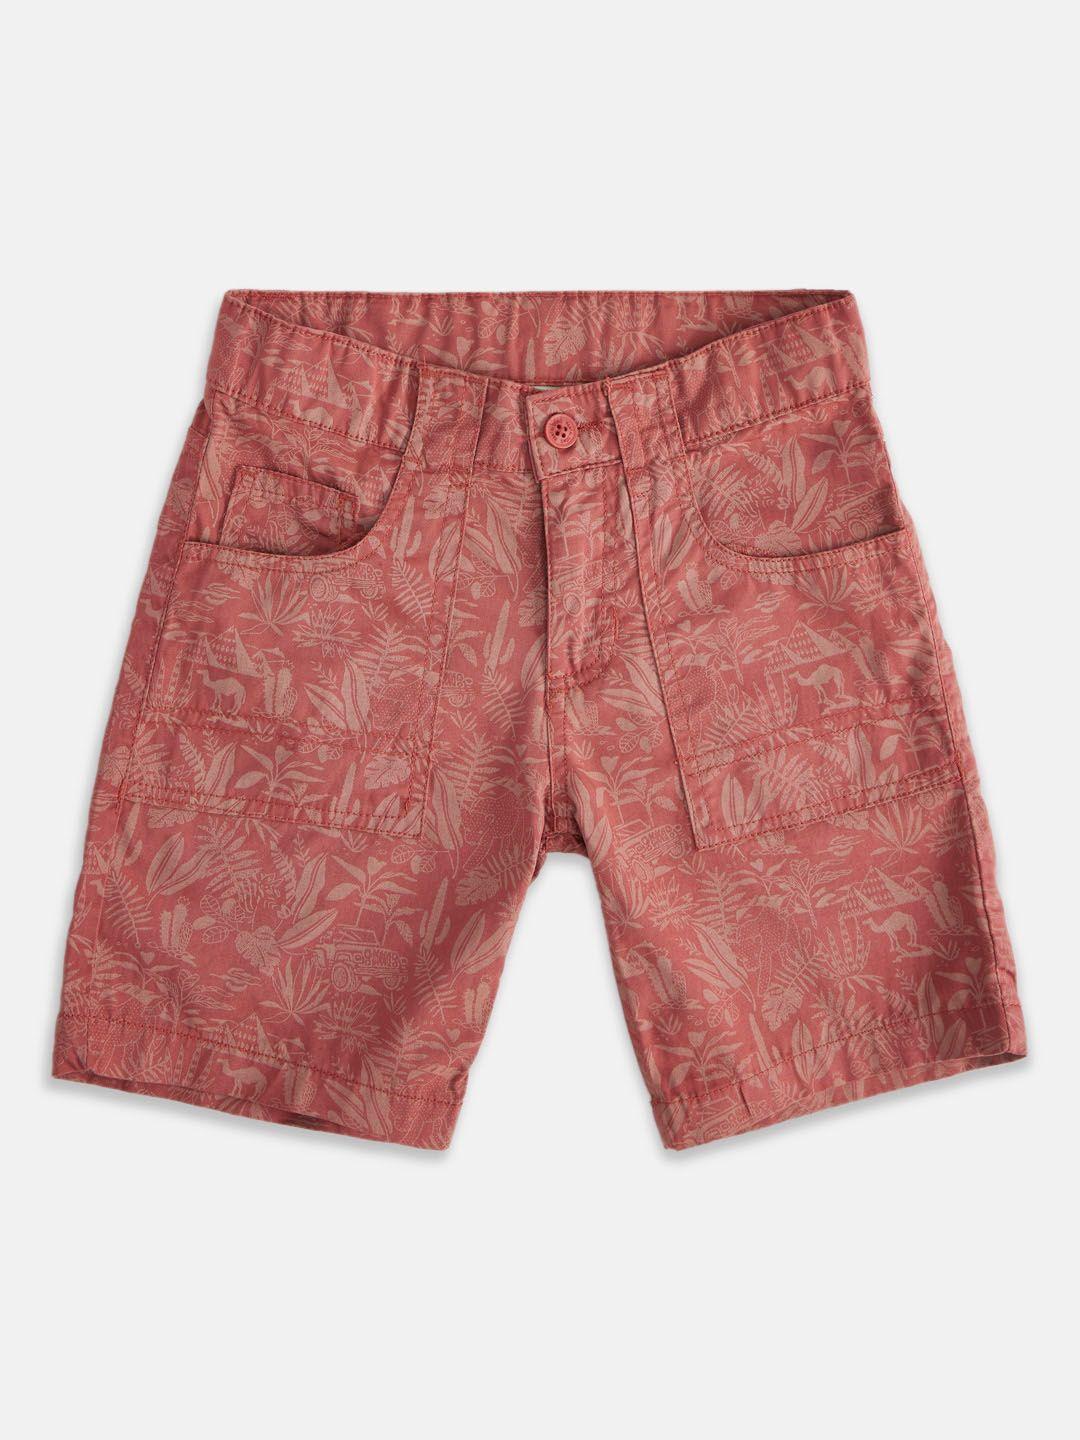 pantaloons junior boys floral printed cotton shorts